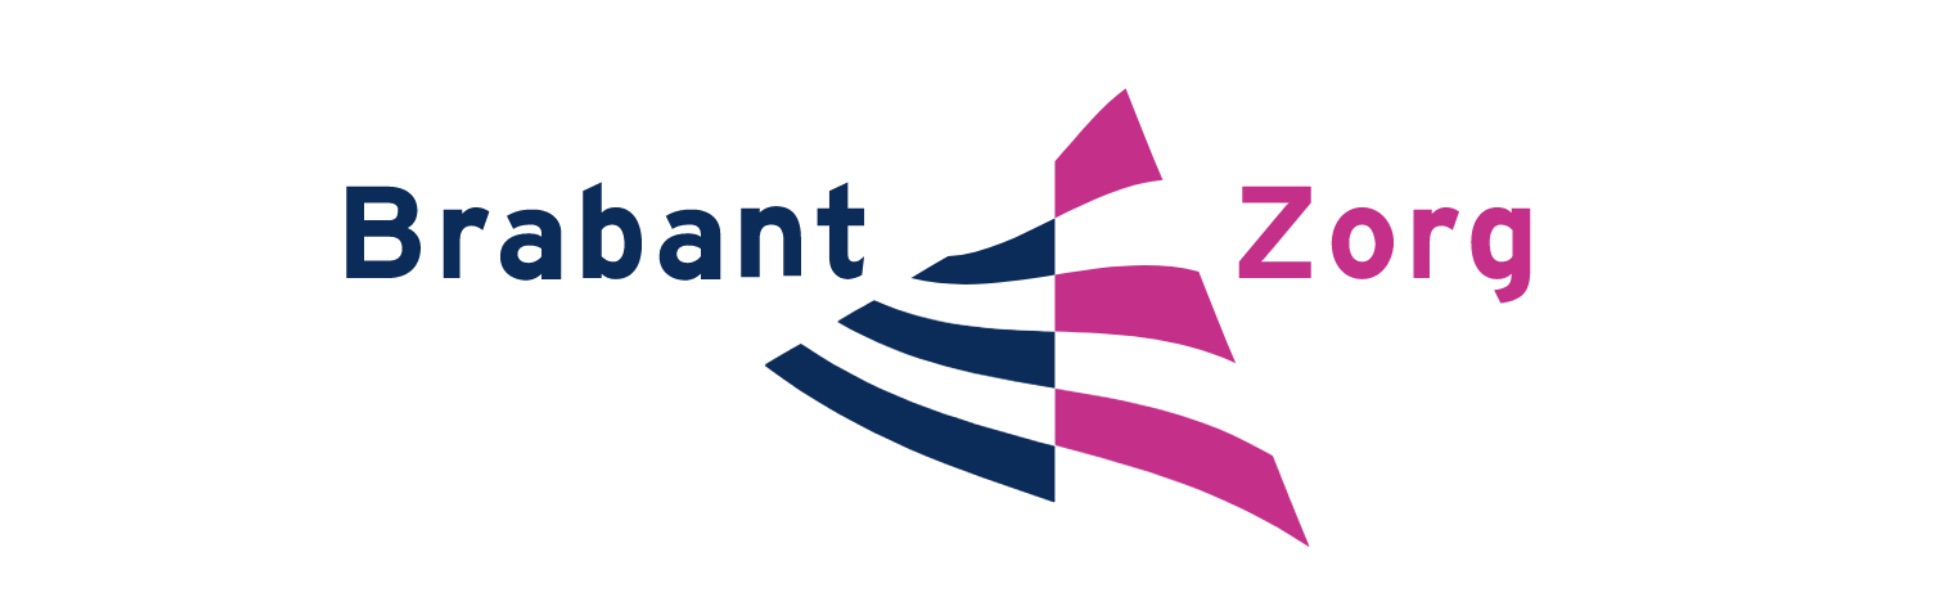 Positionering afdeling communicatie zorgorganisatie BrabantZorg logo